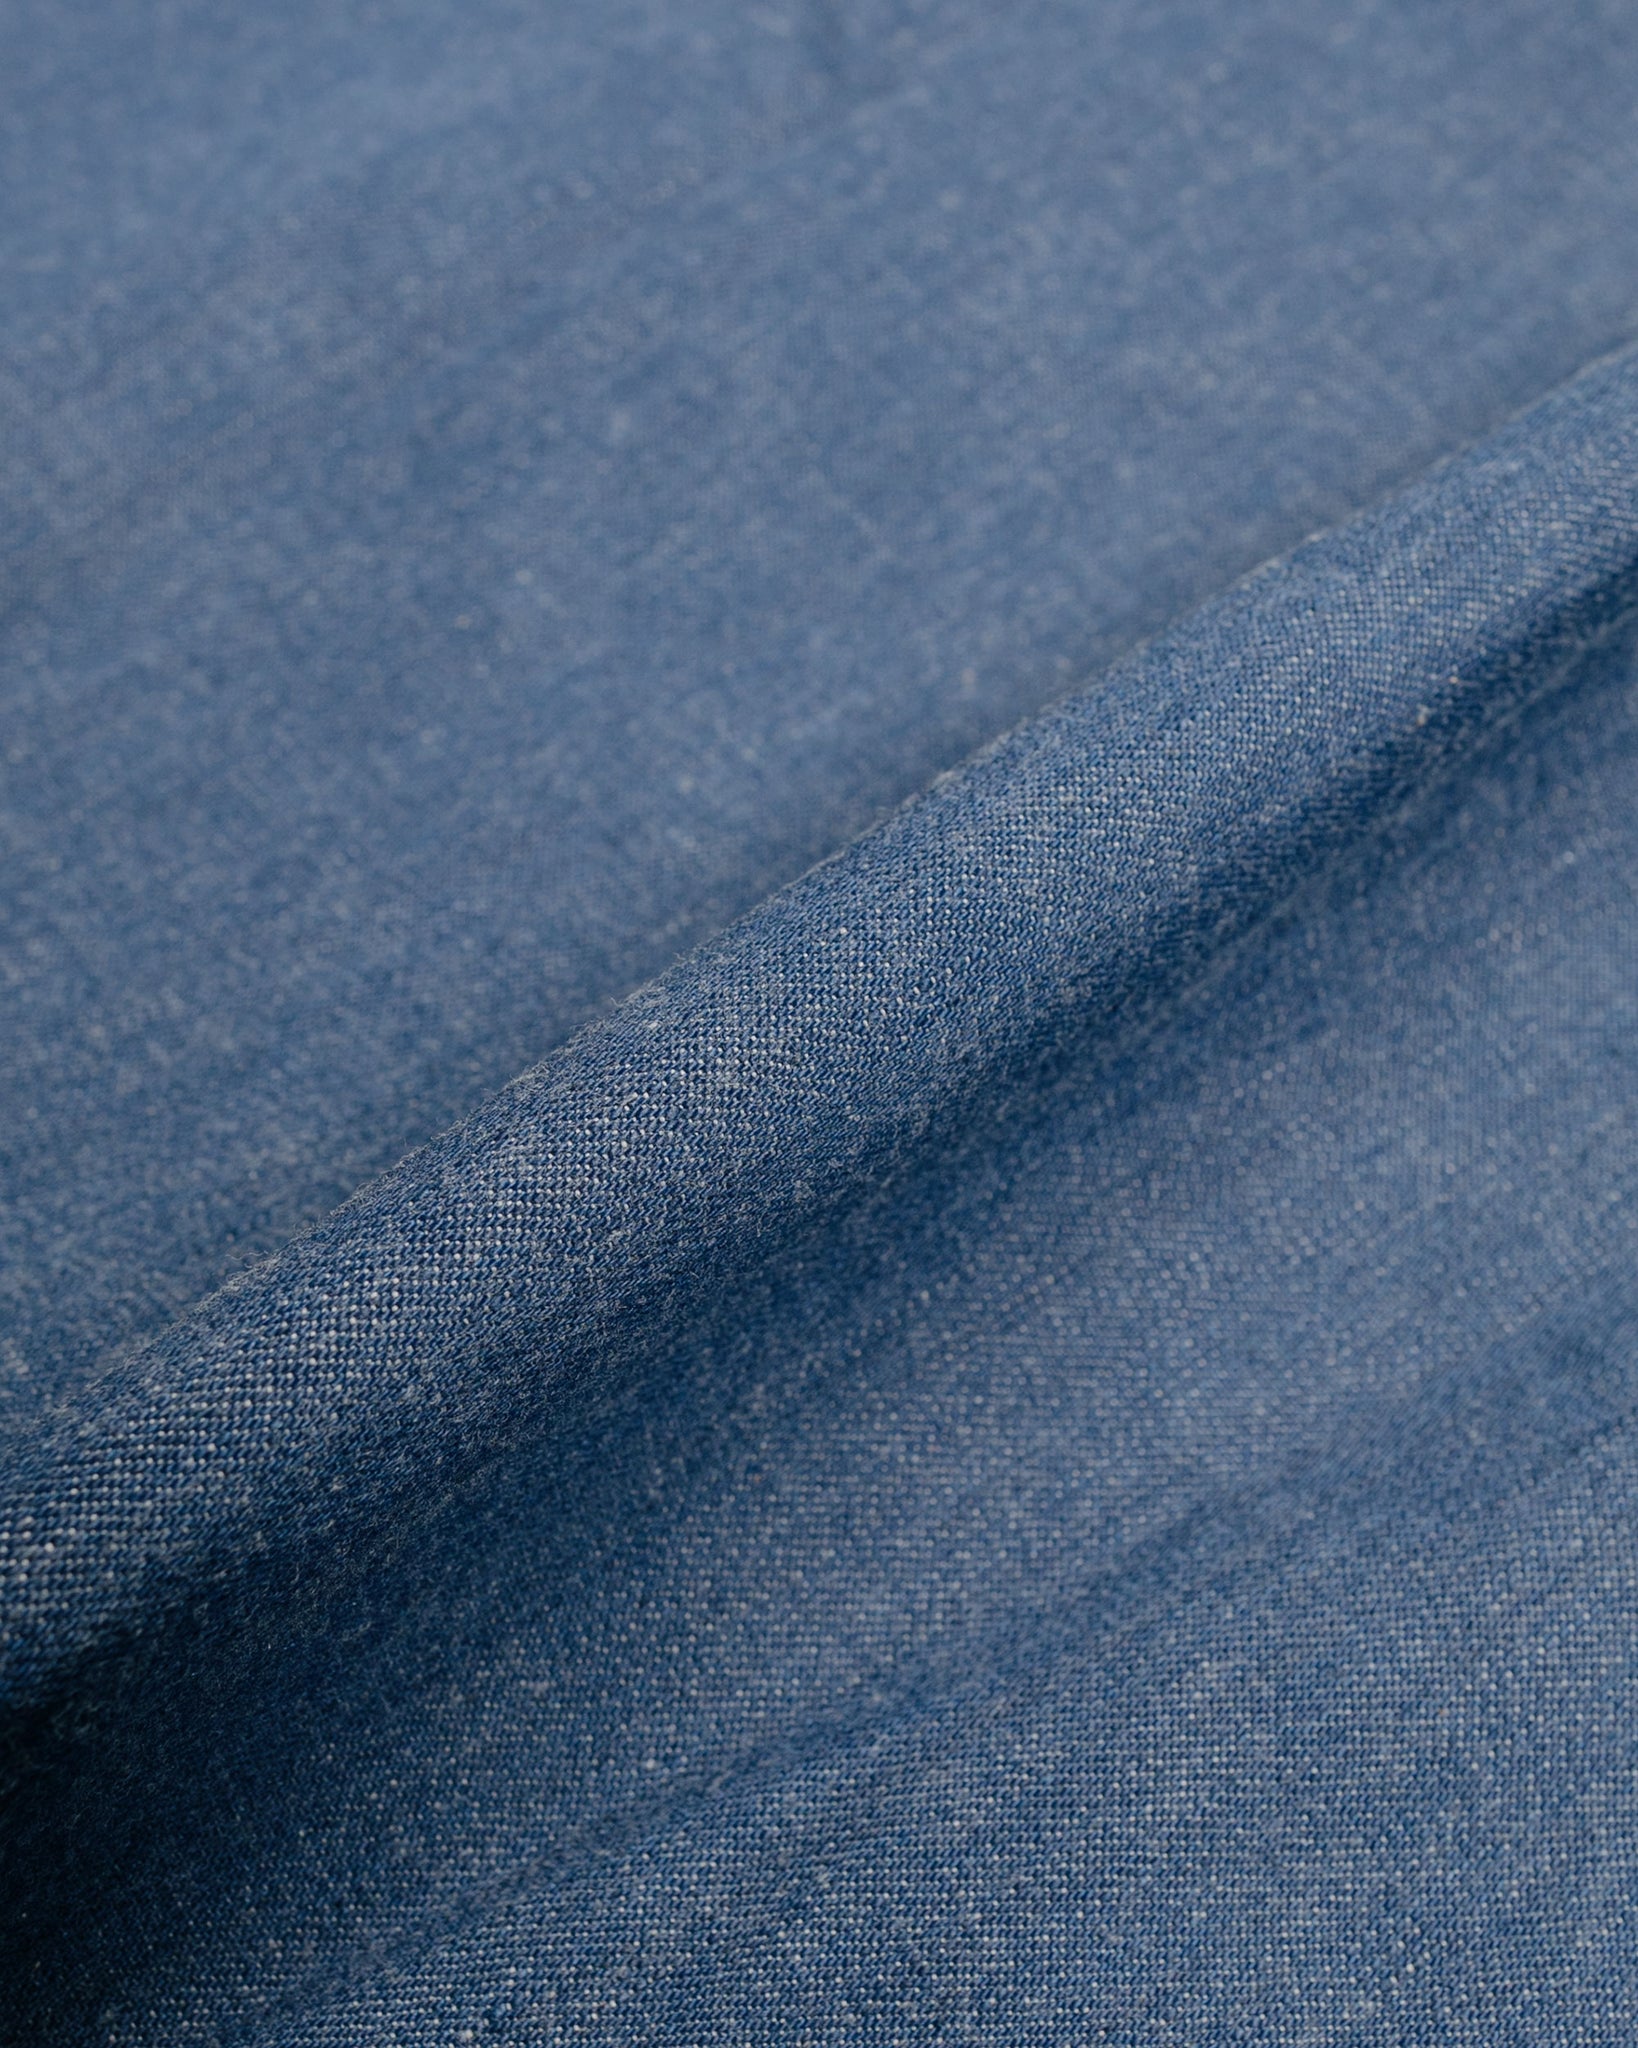 The Real McCoy's MS22003 Denim Western Shirt  Sawtooth Indigo fabric